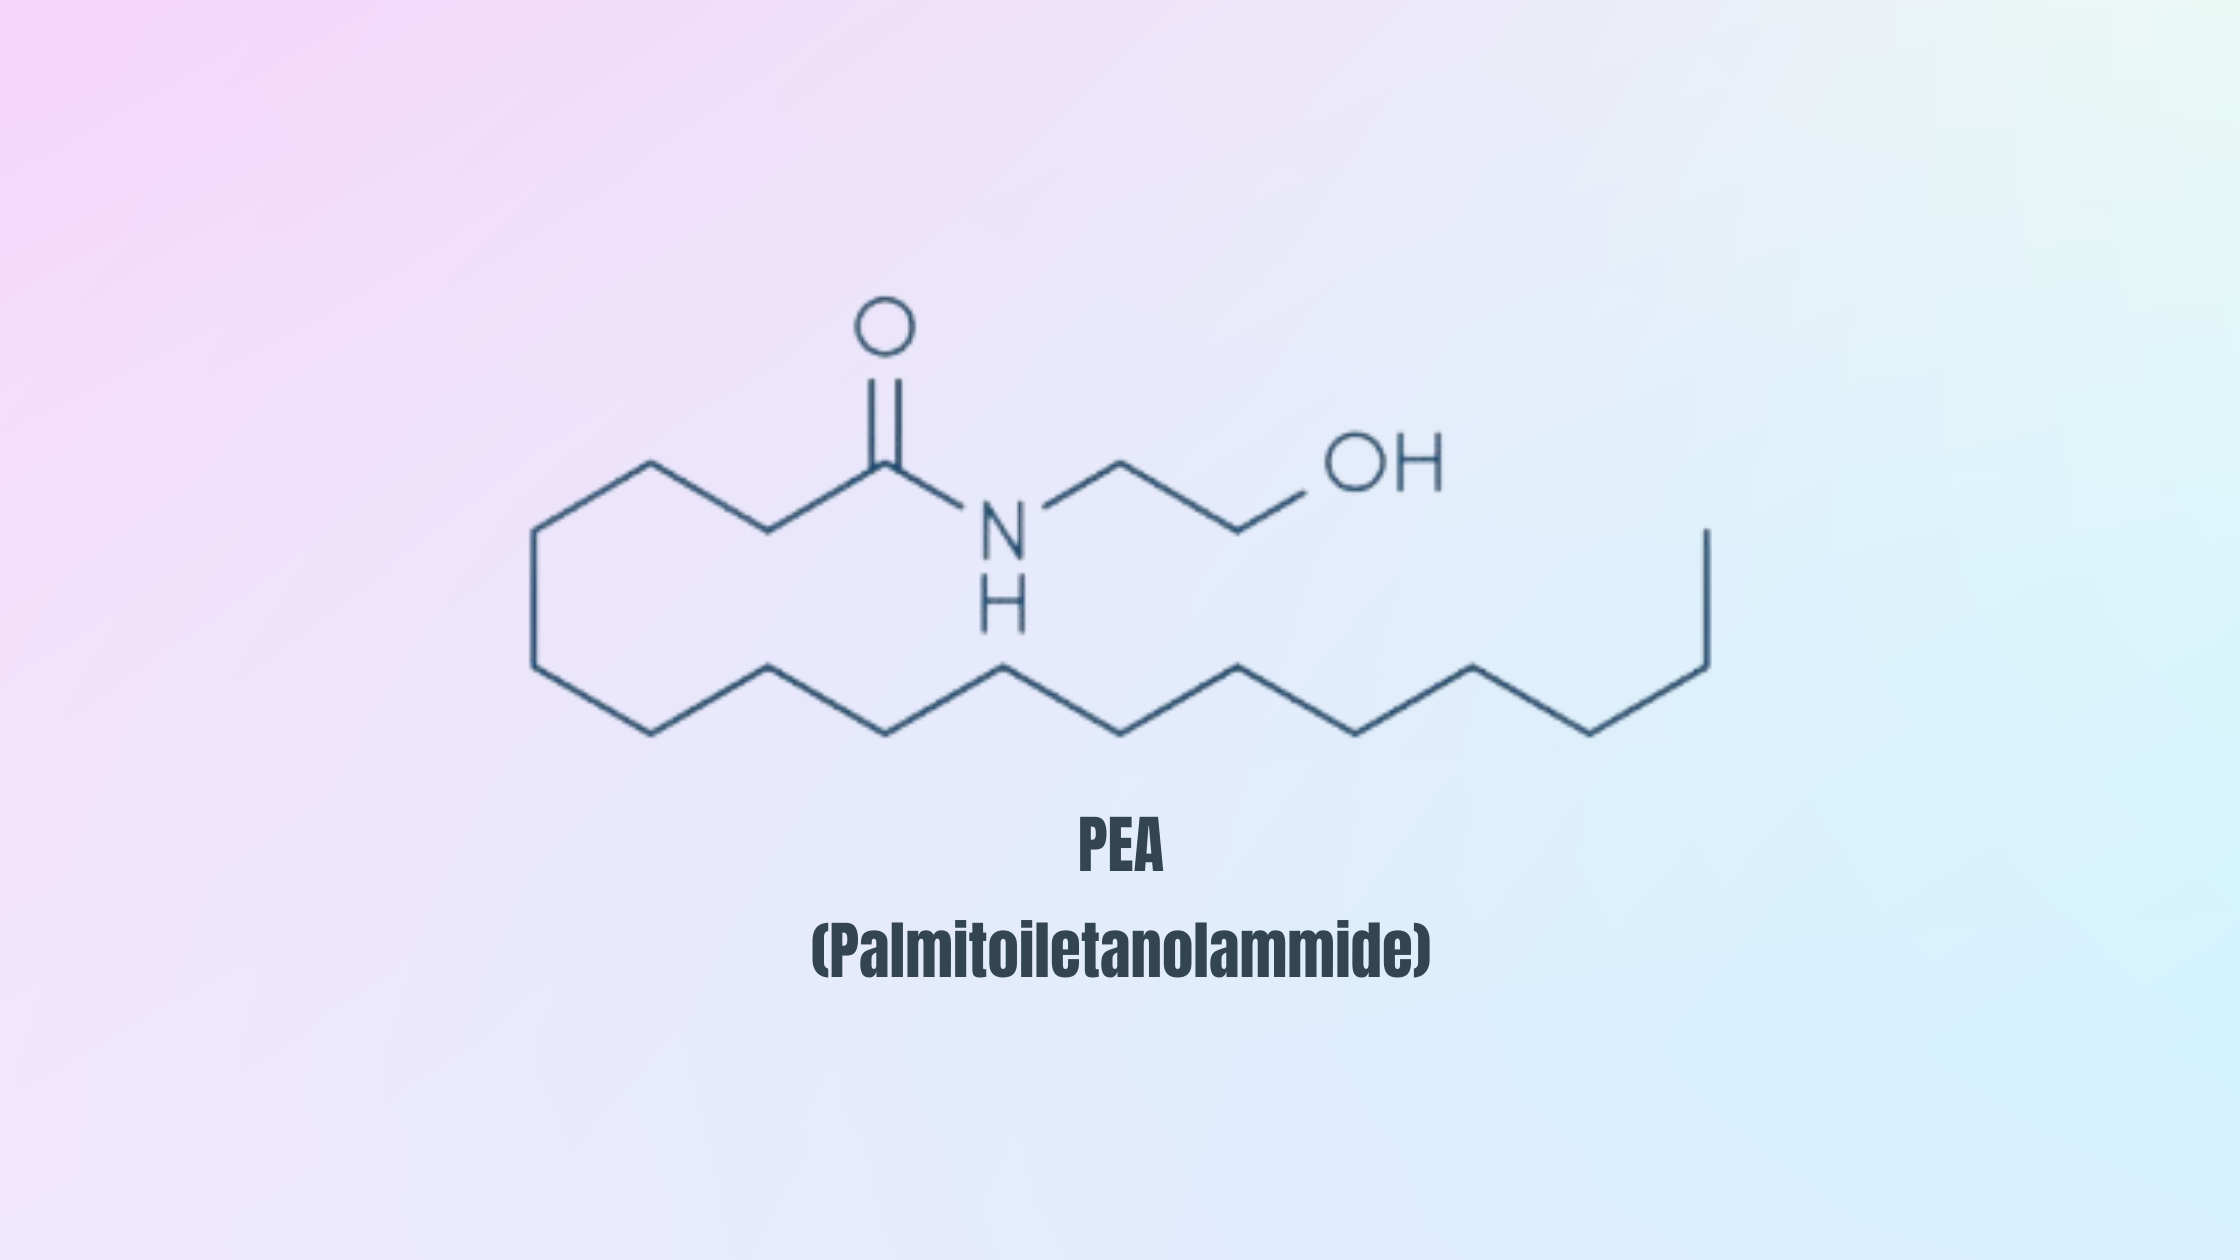 PEA (Palmitoiletanolammide)